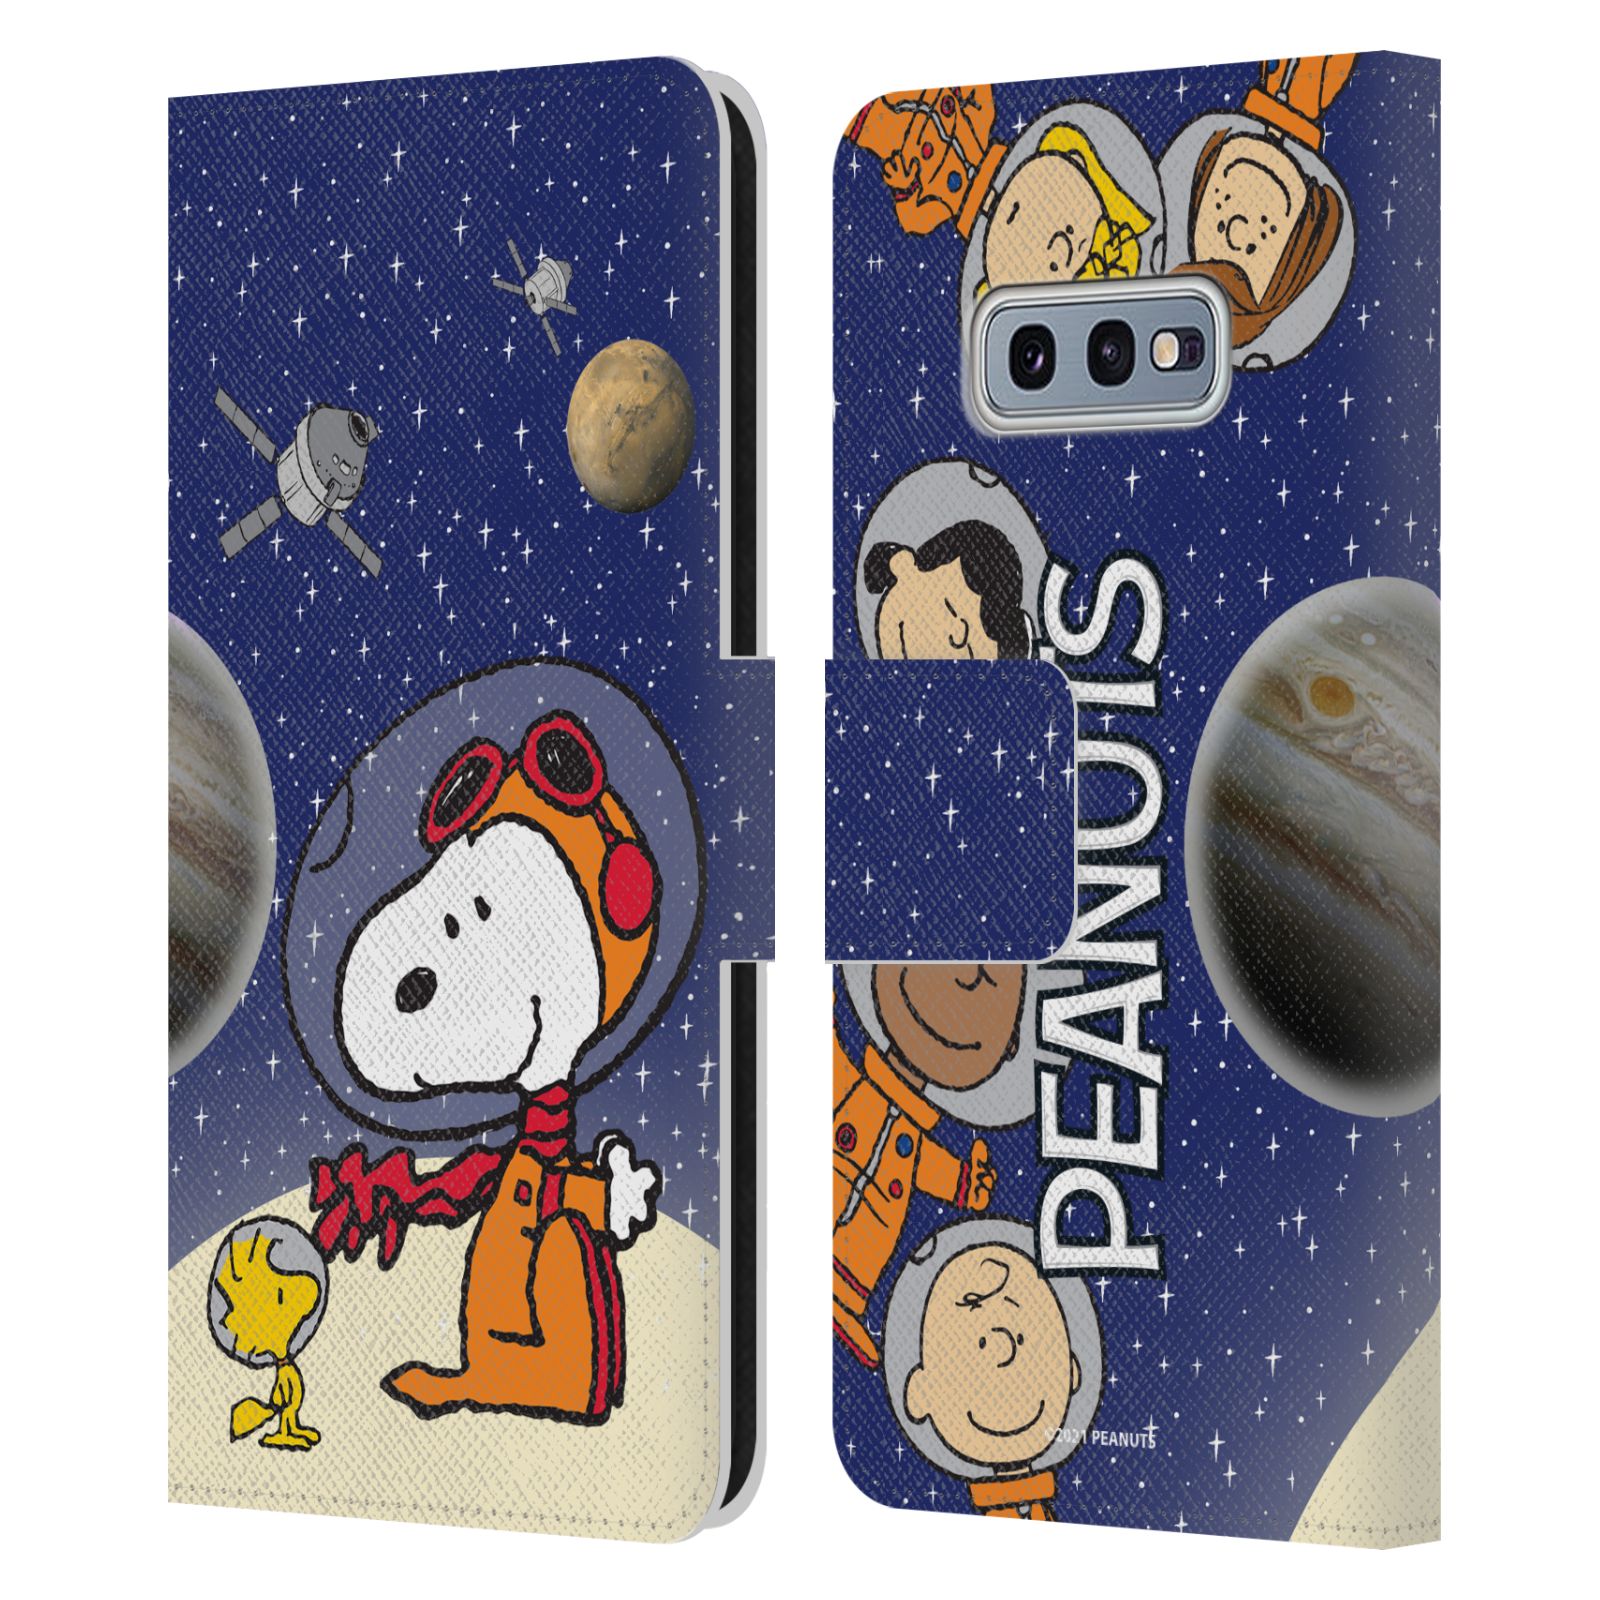 Pouzdro na mobil Samsung Galaxy S10e  - HEAD CASE - Peanuts Snoopy ve vesmíru 2